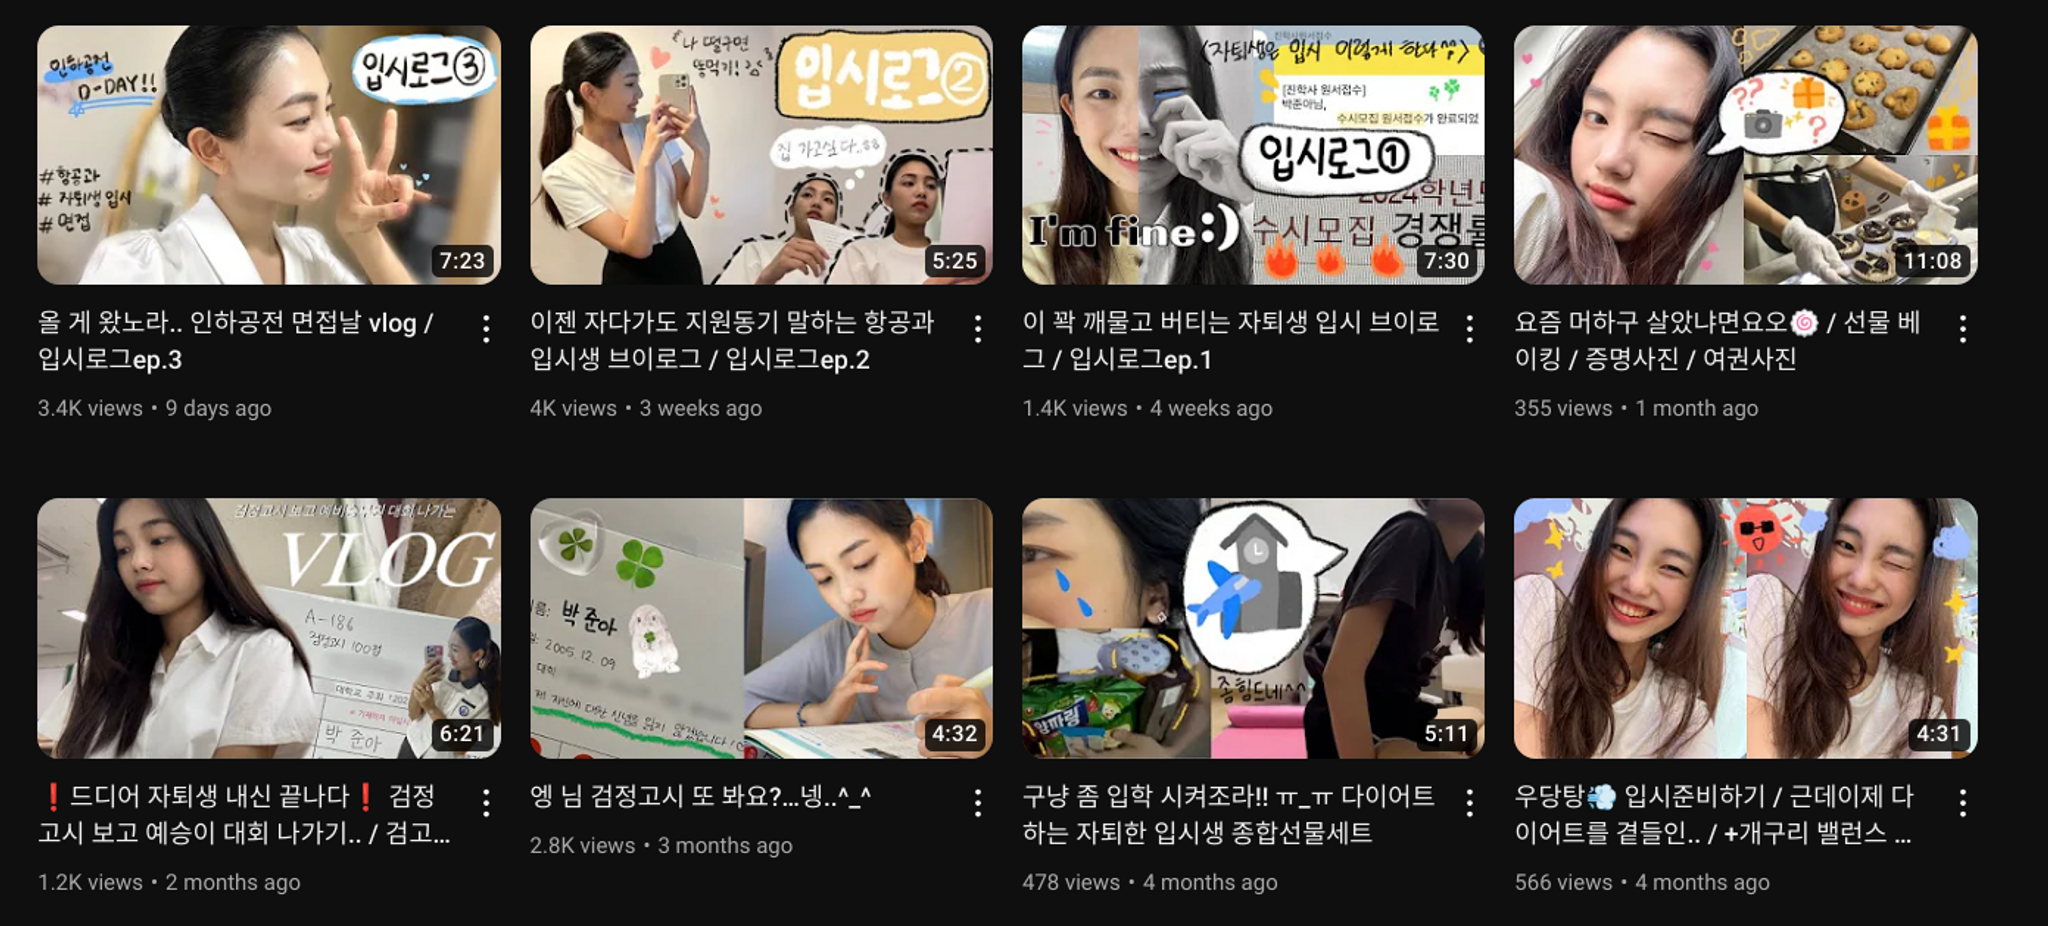 Korean school dropout vlogs signal shifting life goals